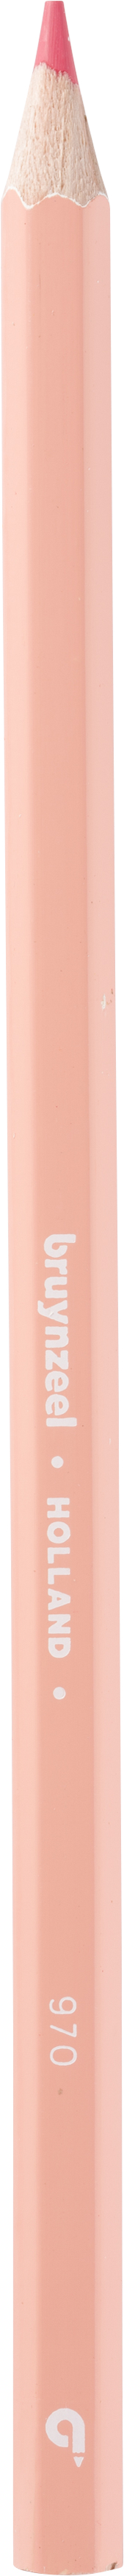 BRUYNZEEL Crayon de couleur Super 3.3mm 60516970 apricot